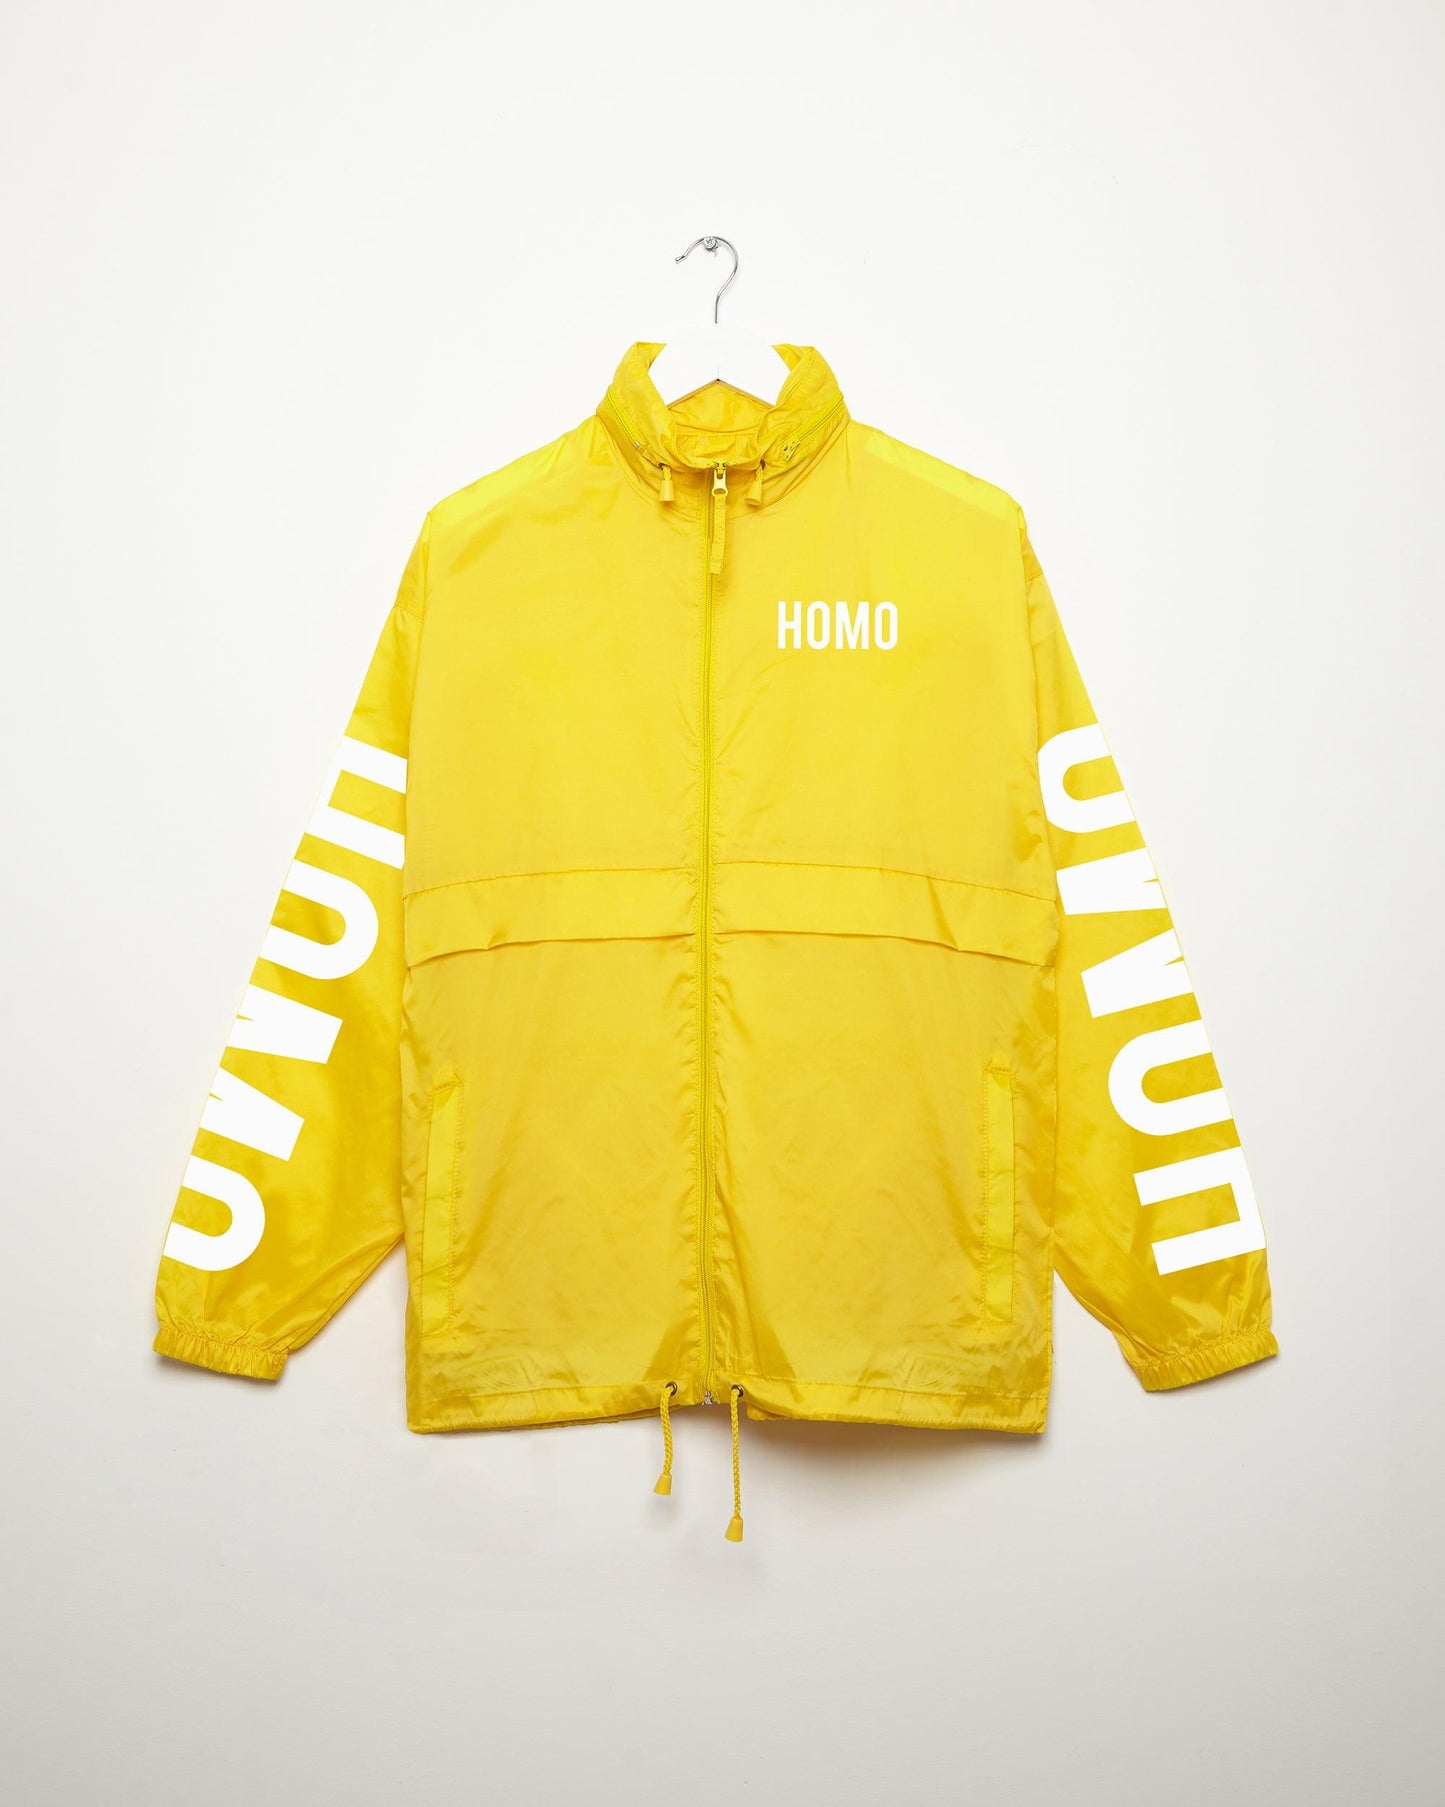 HOMO yellow - windbreaker jacket